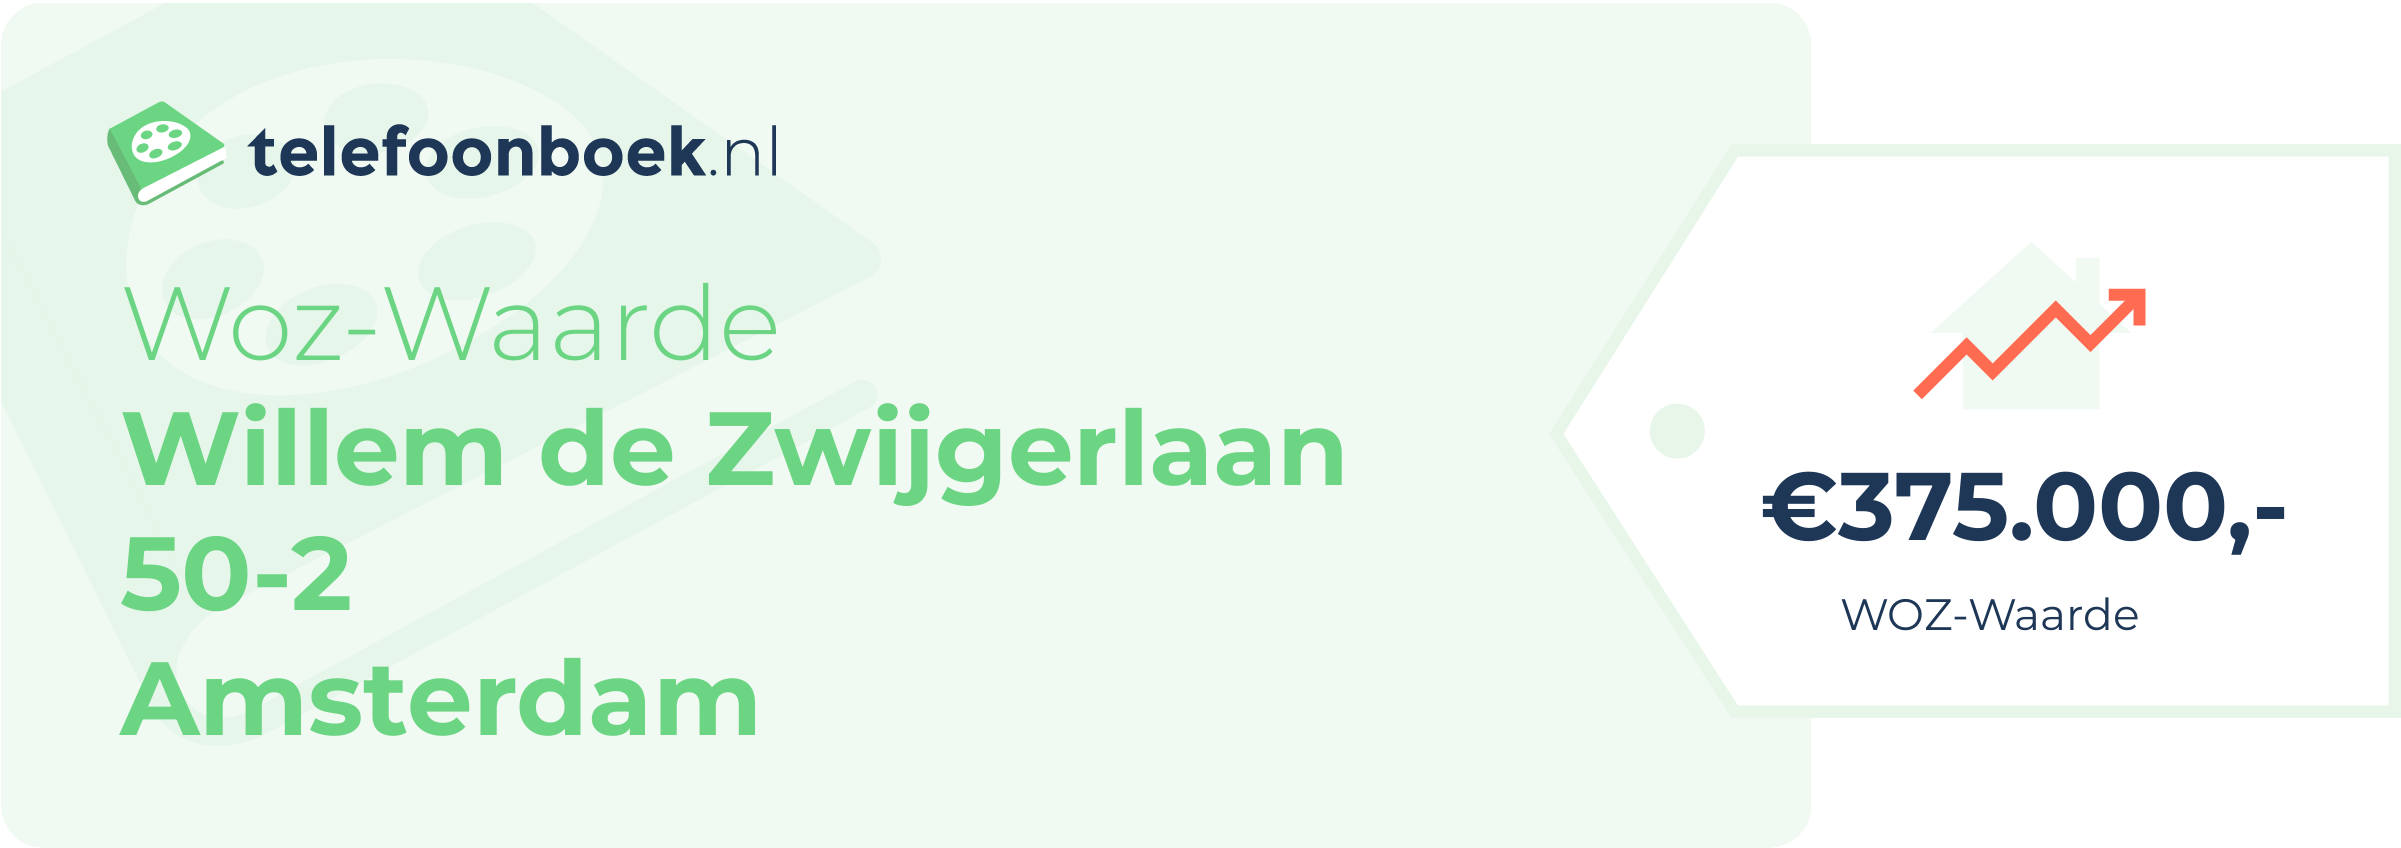 WOZ-waarde Willem De Zwijgerlaan 50-2 Amsterdam